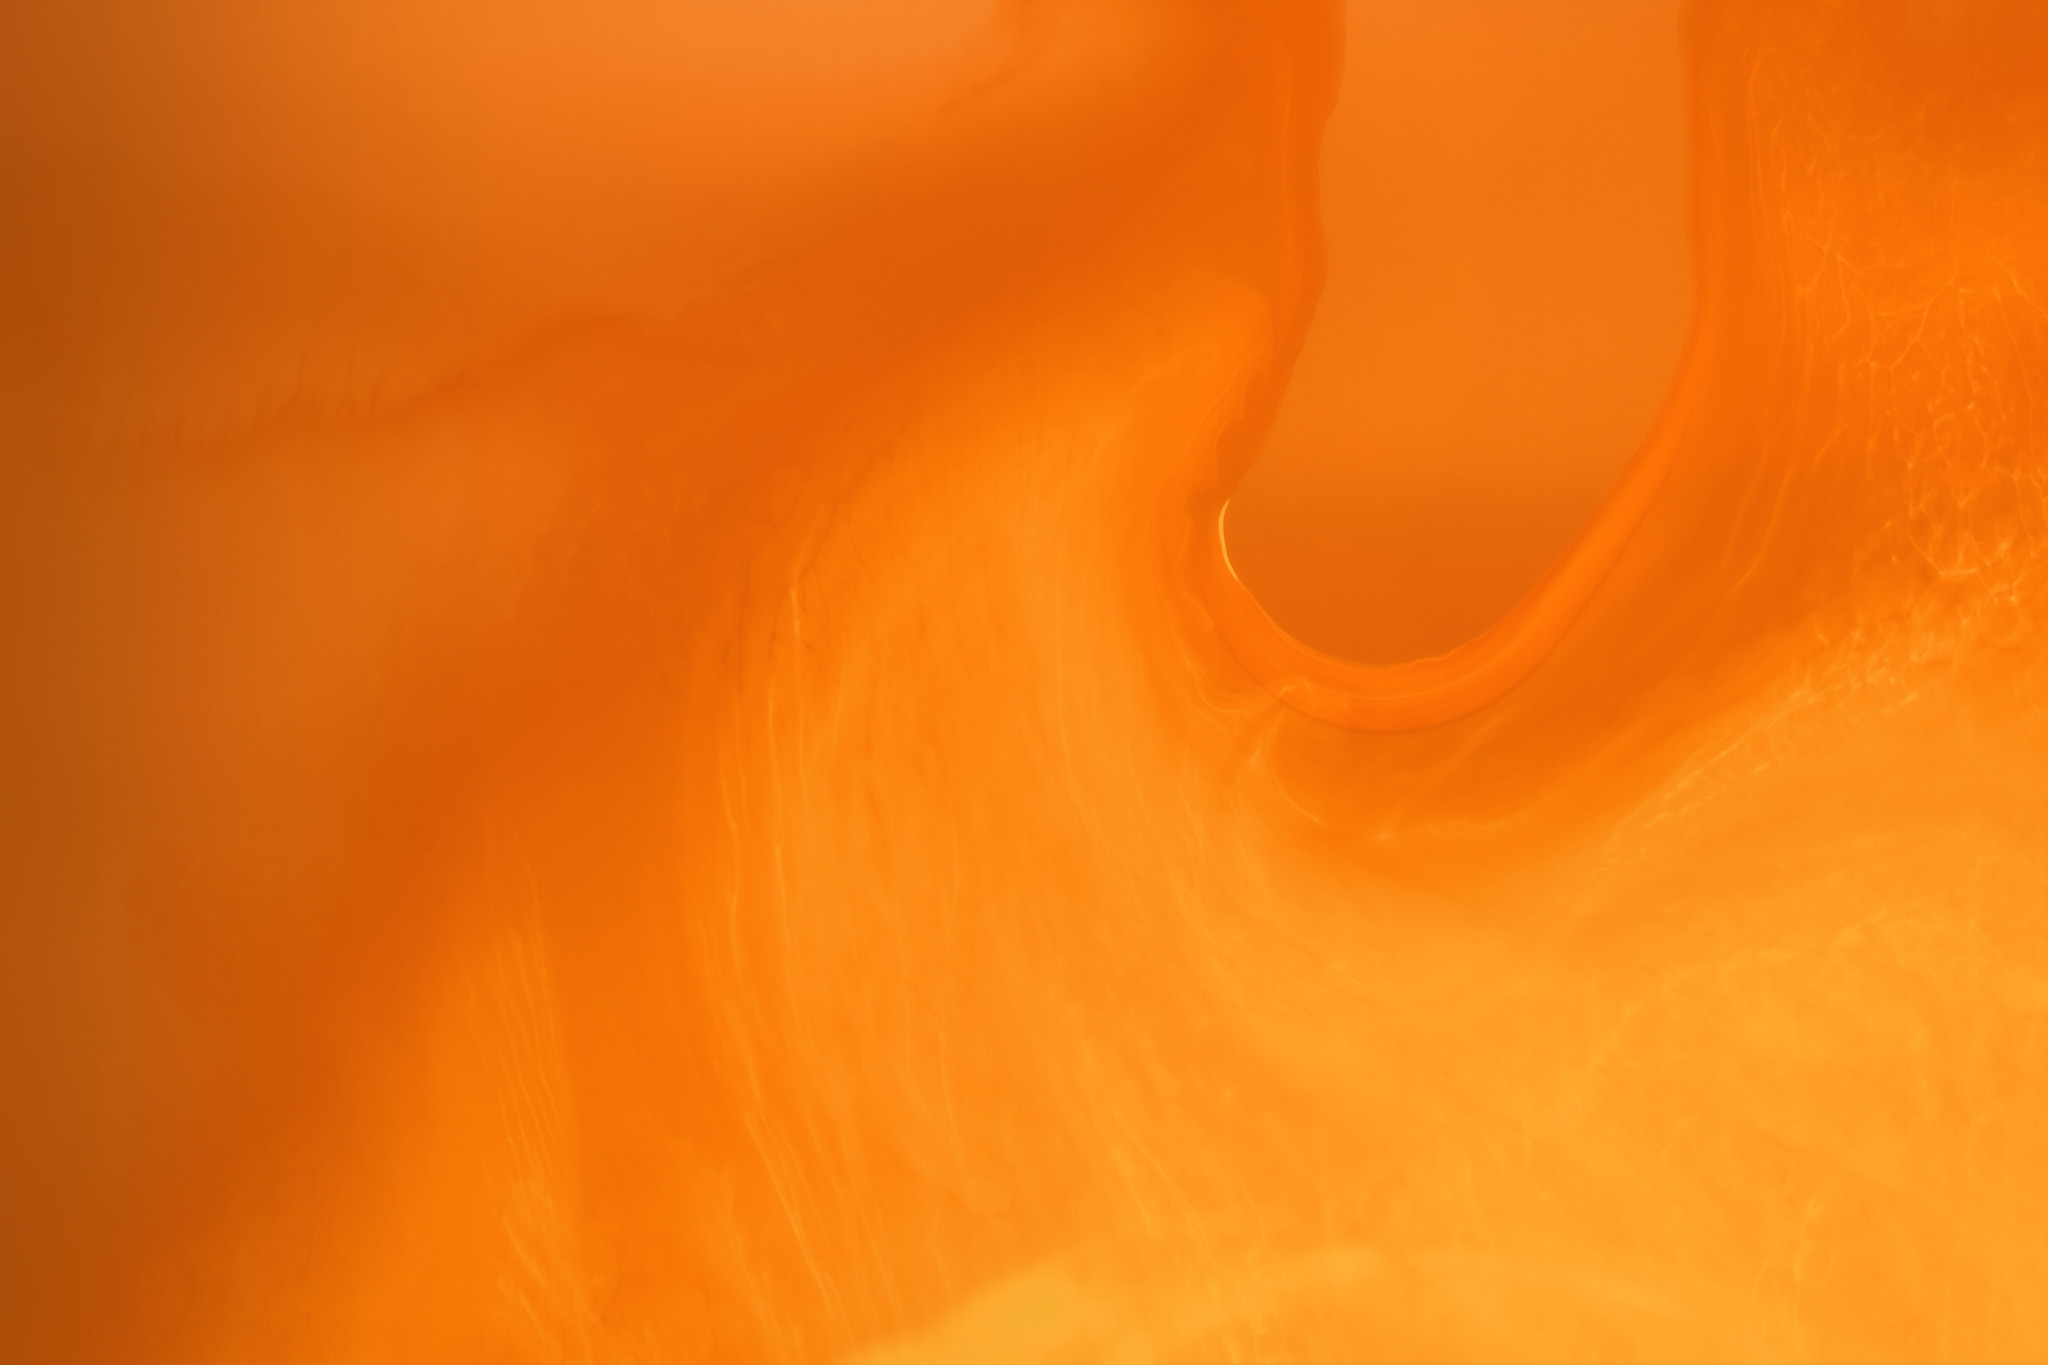 かっこいいオレンジ色のおしゃれな画像 の画像素材を無料ダウンロード 1 フリー素材 Beiz Images